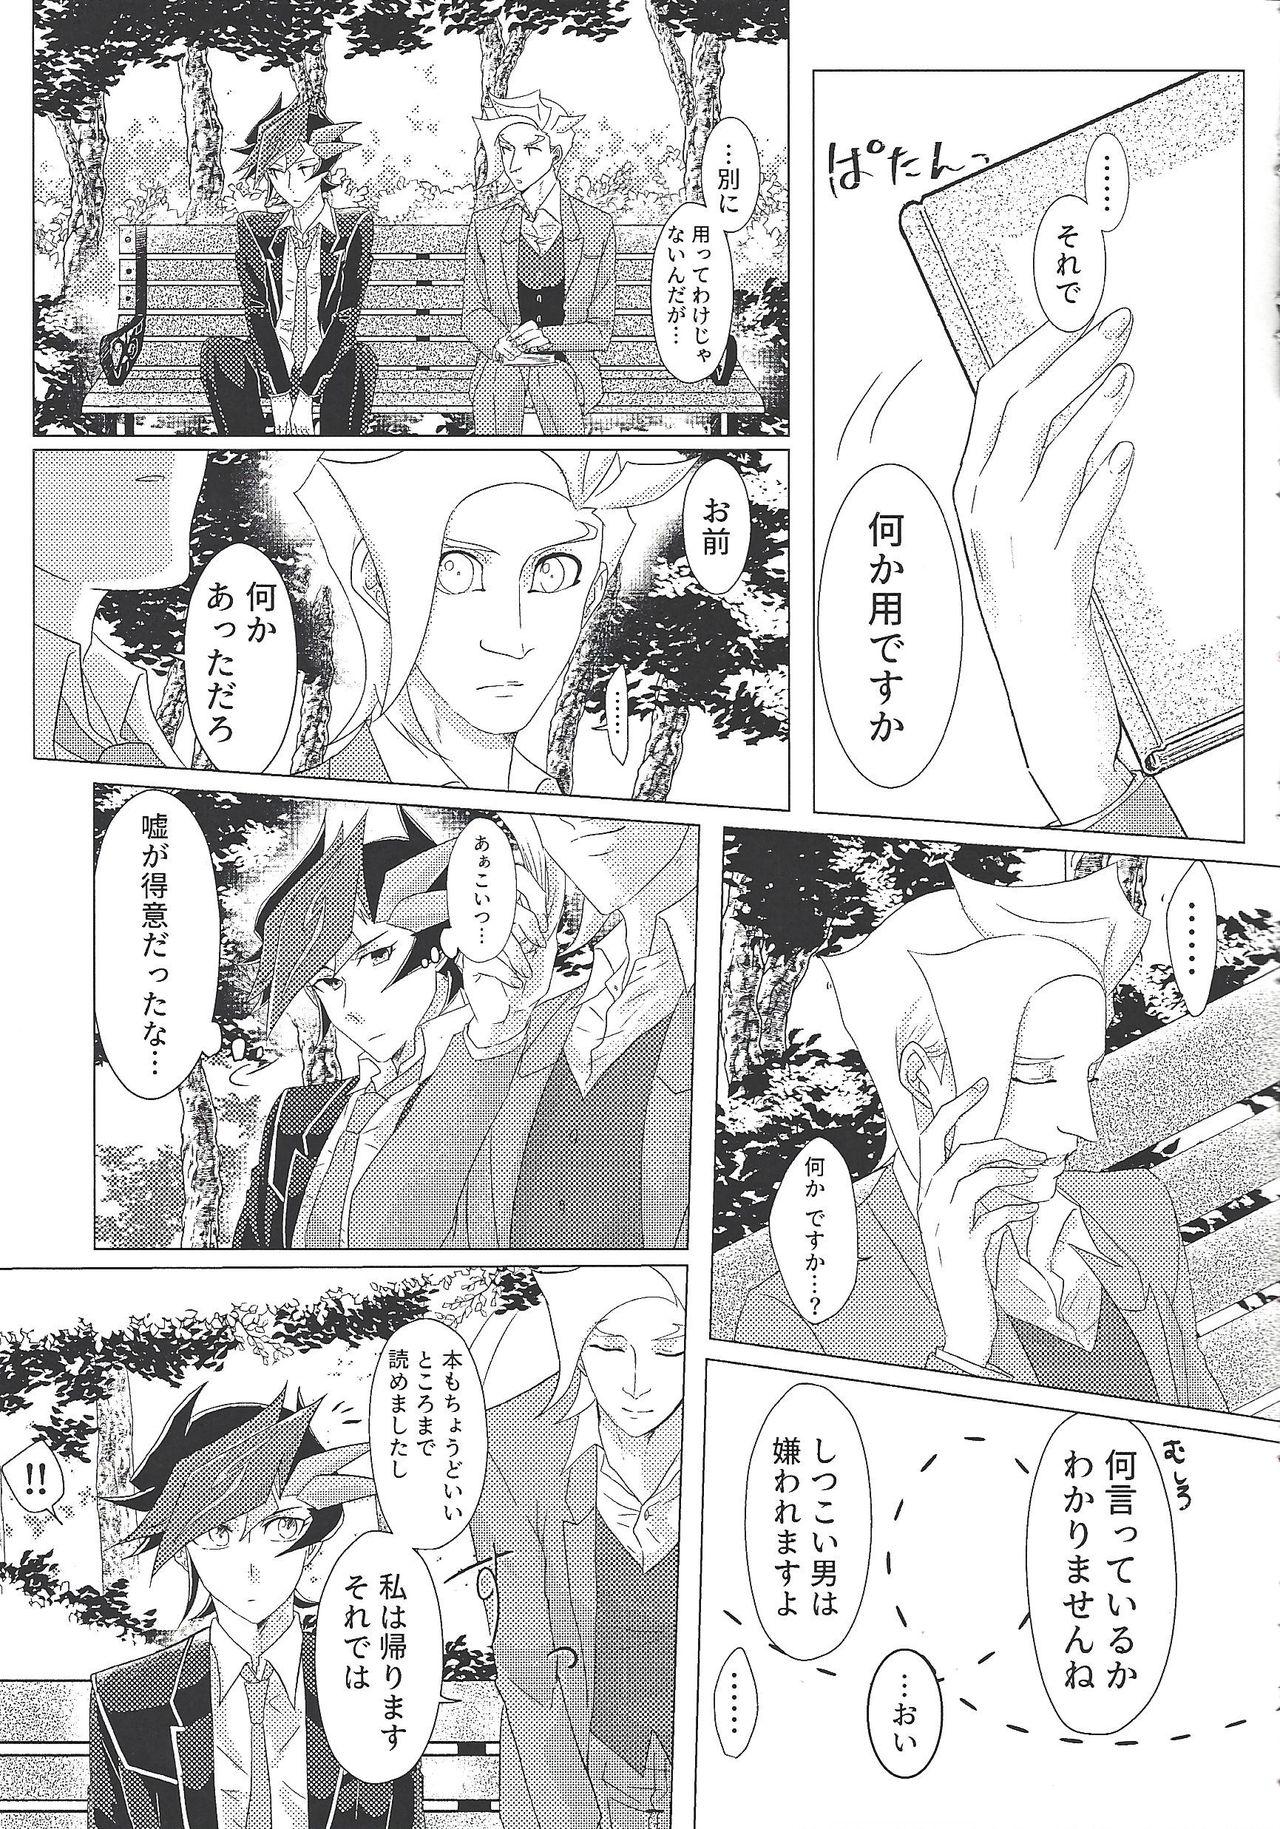 Mamando Daishou no Kanju - Yu gi oh vrains Coeds - Page 6